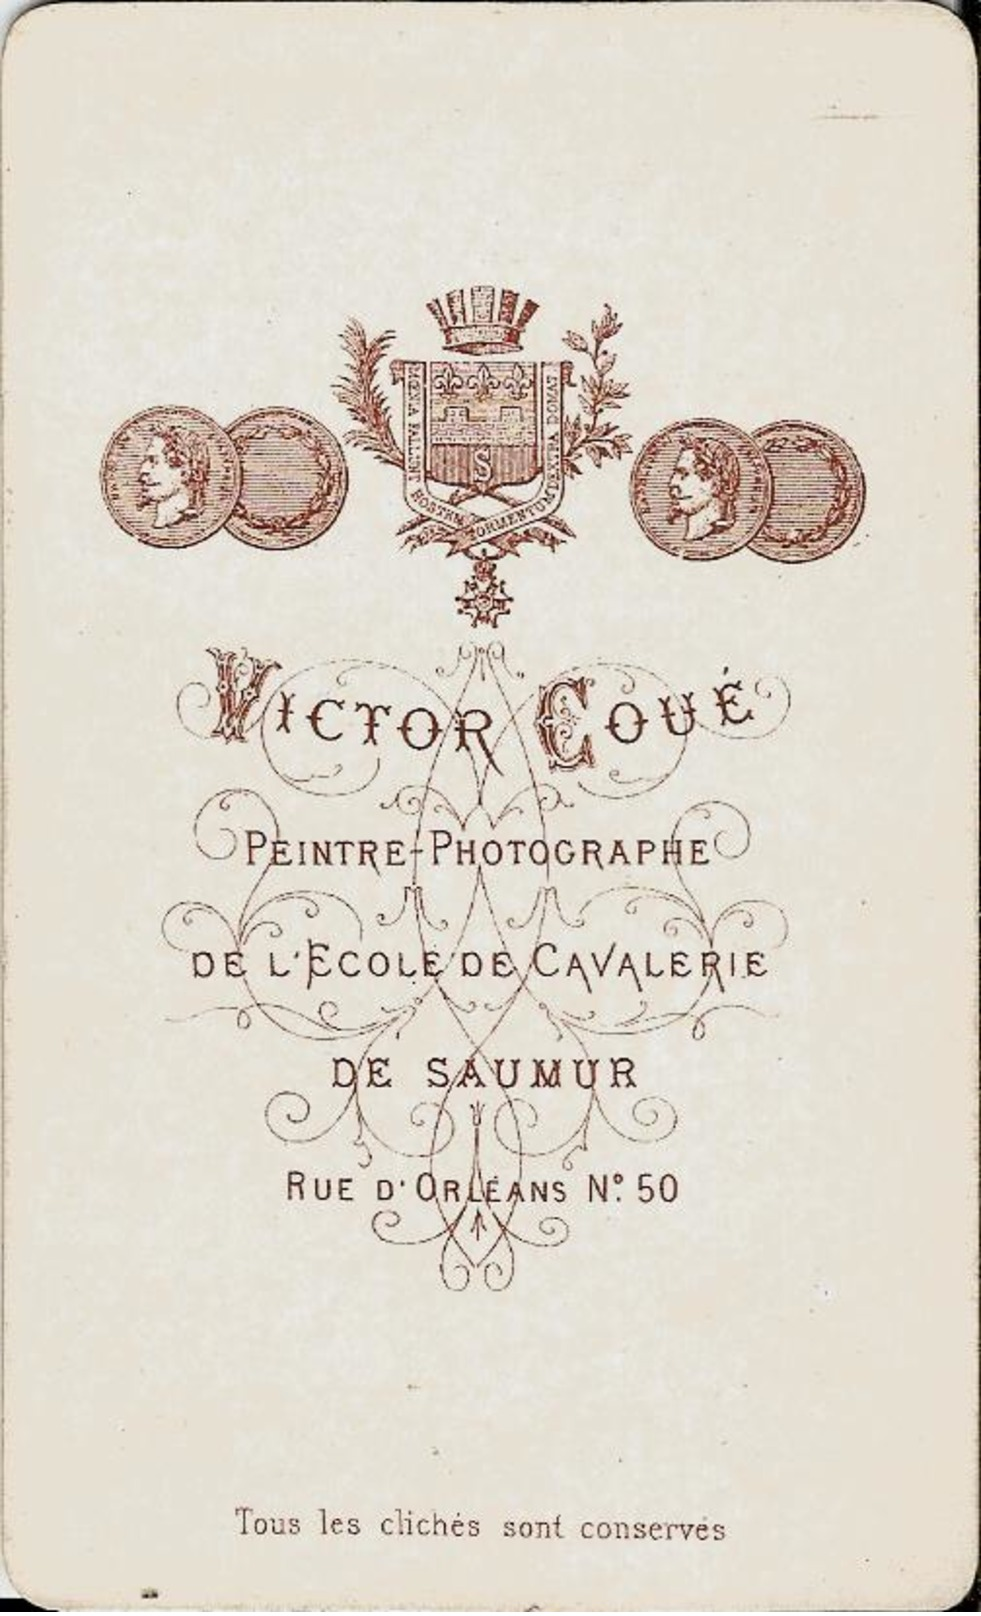 CDV -  PHOTOGRAPHE VICTOR COUE - ECOLE DE CAVALERIE DE SAUMUR - MILITAIRE AVEC CRAVACHE - BOTTES -  DATEE 1880 - Anciennes (Av. 1900)